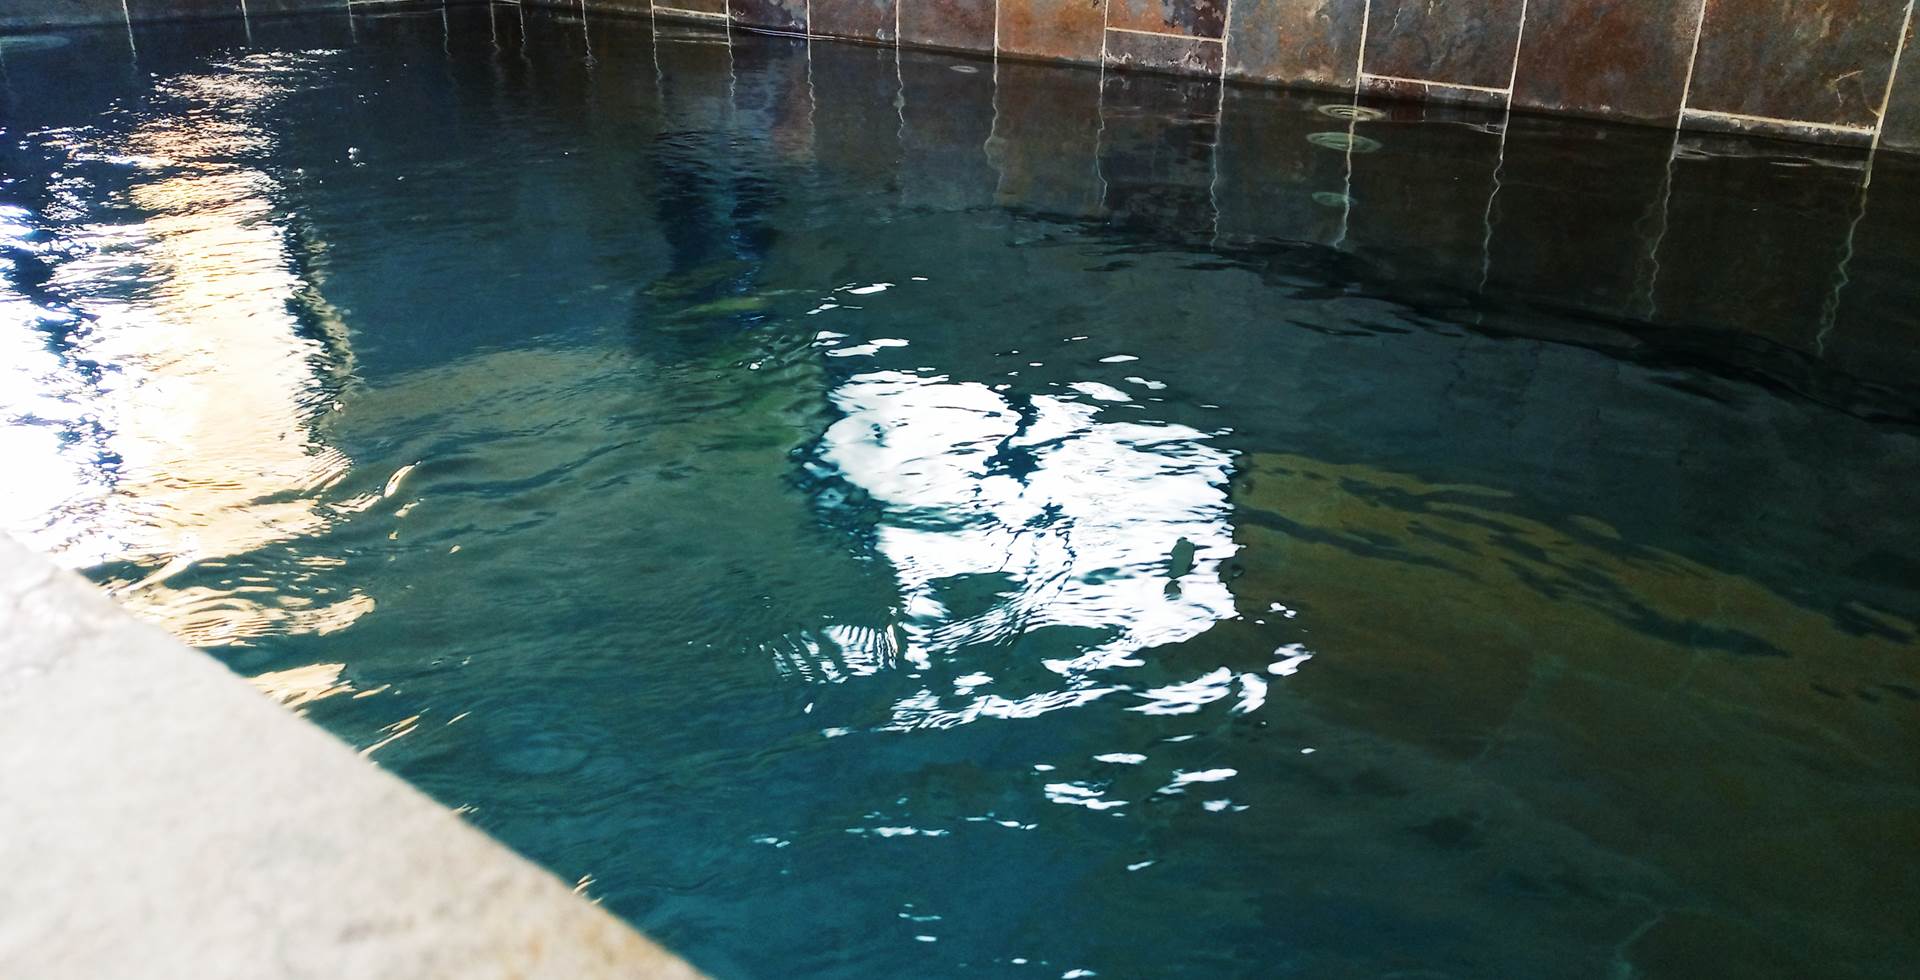 piscine de 8 mètres en pierre, eau salée, nage à contre courant, hydromassage, chauffée toute l'année sauna